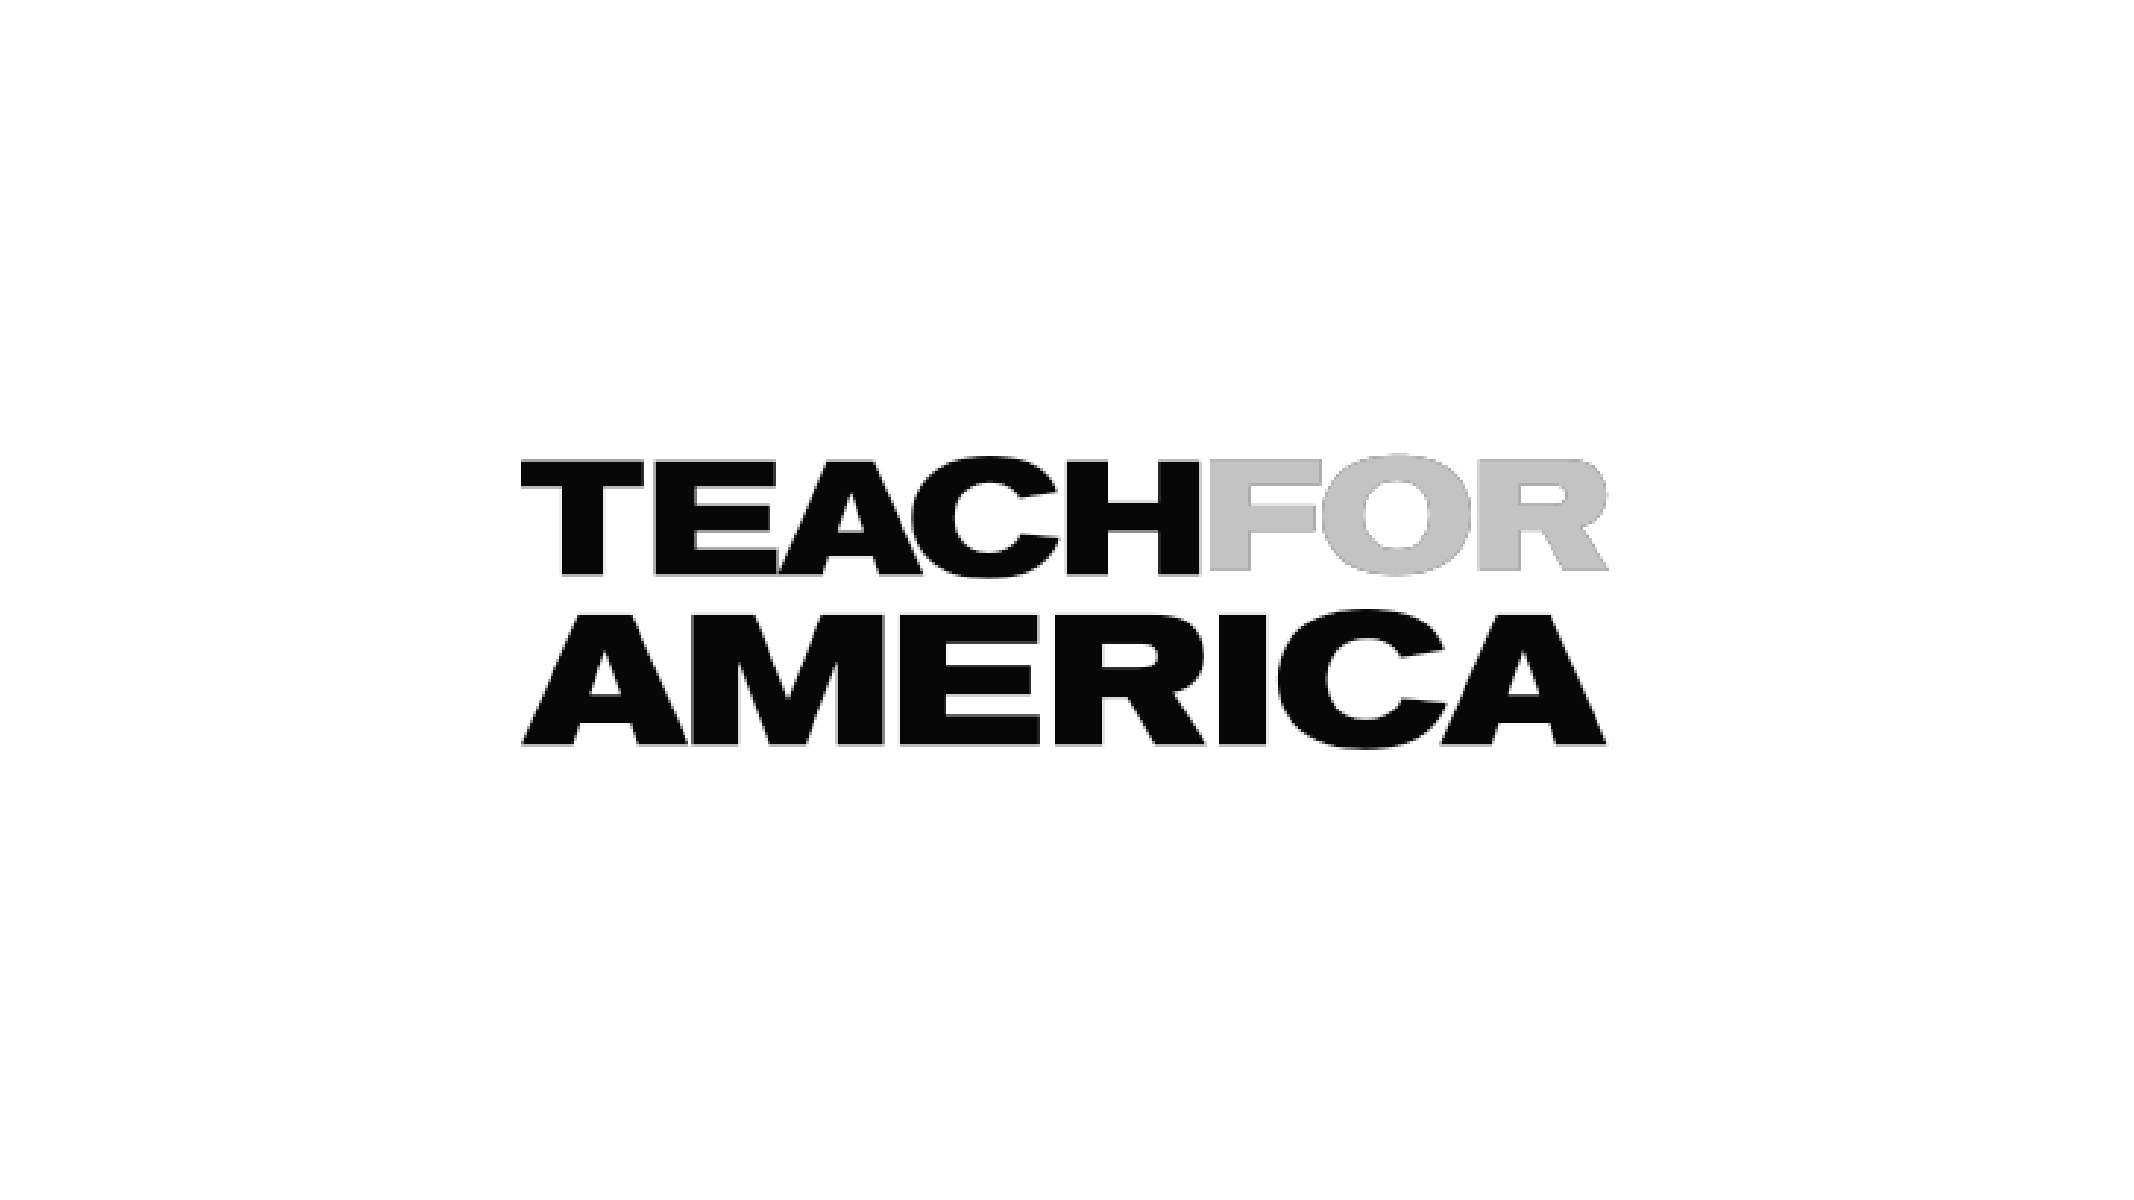 Teach for America - Imprint